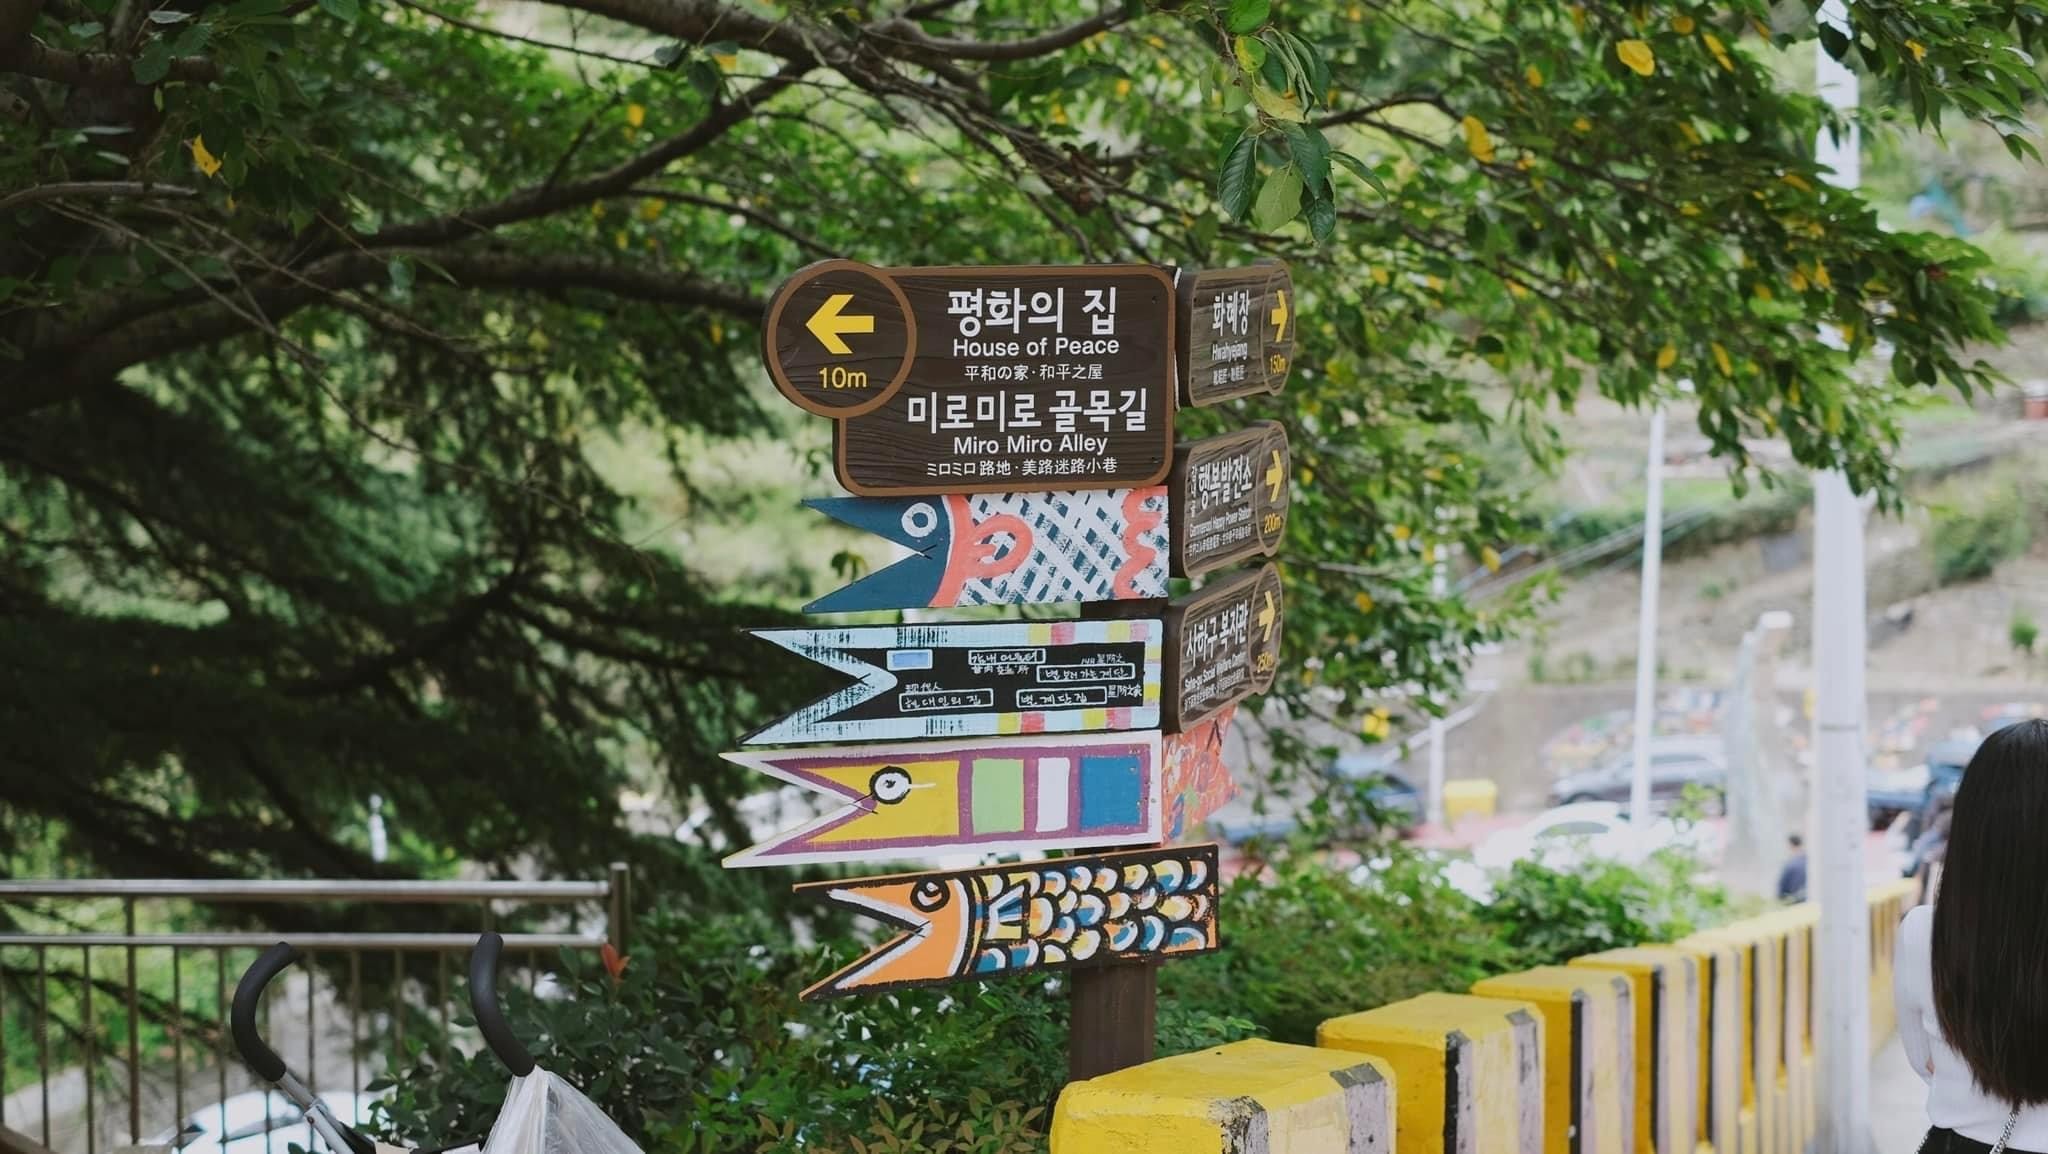 lang-van-hoa-gamcheon-gamcheon-culture-village-alley-1657509153.jpg